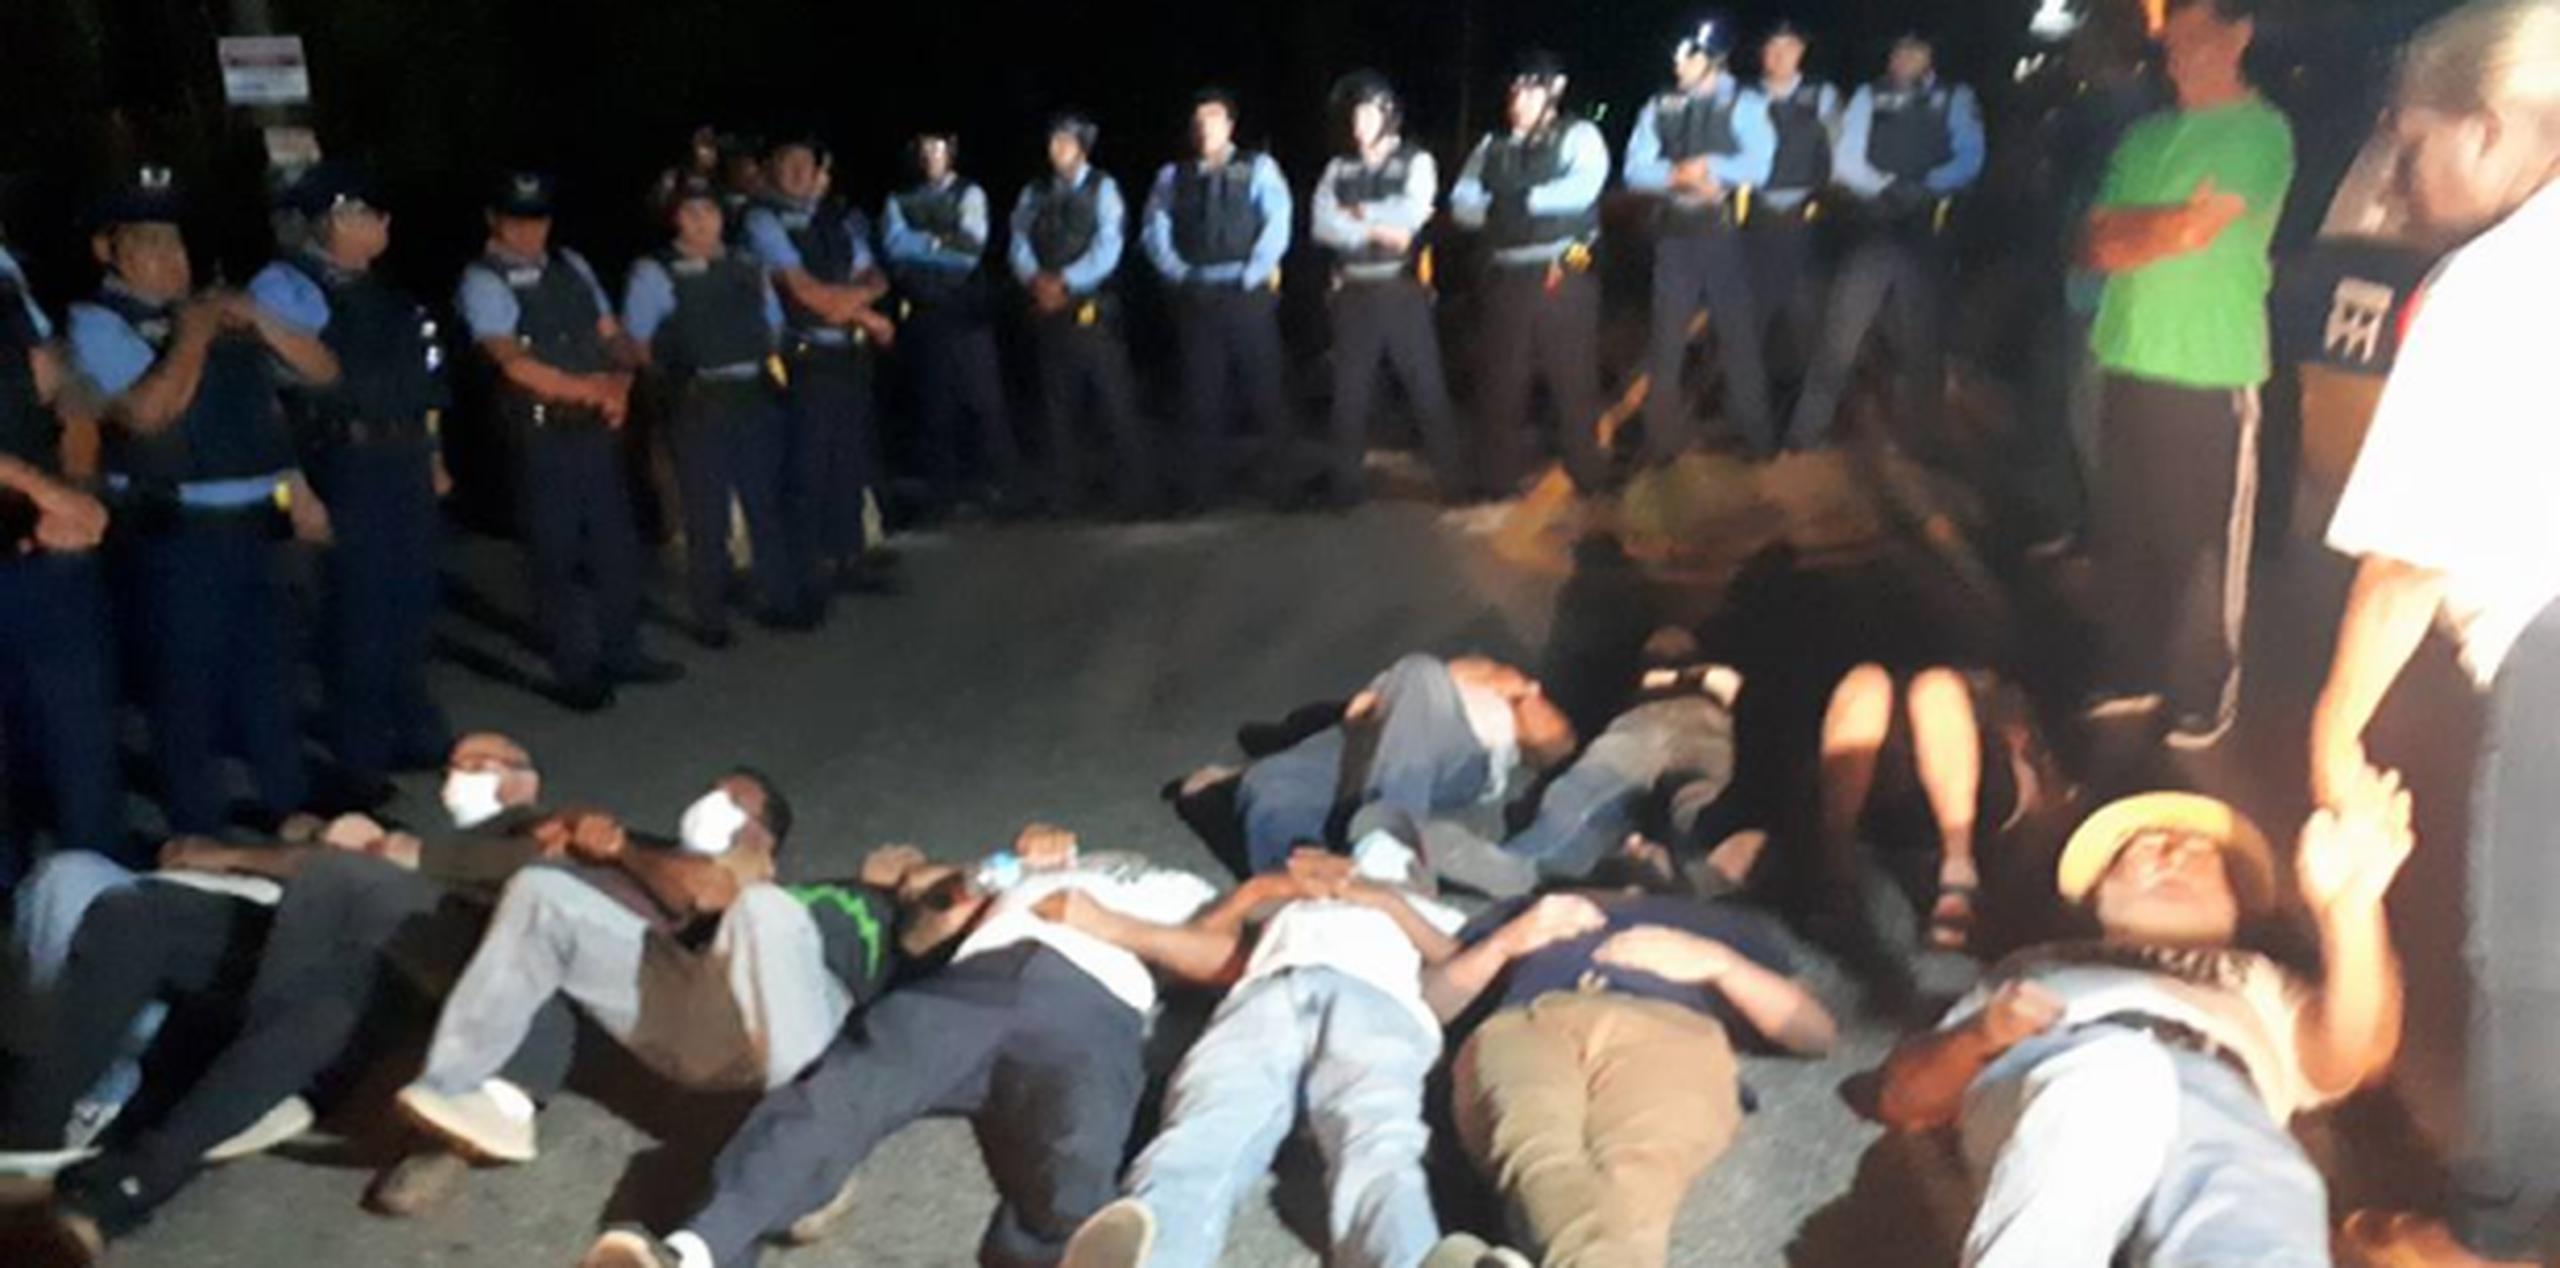 Los manifestantes no dudaron en tumbarse en el suelo para evitar el paso de los camiones al vertedero. Según indicaron, la actitud de la Policía “fue de burla, bien hostil...”. (Suministrada)